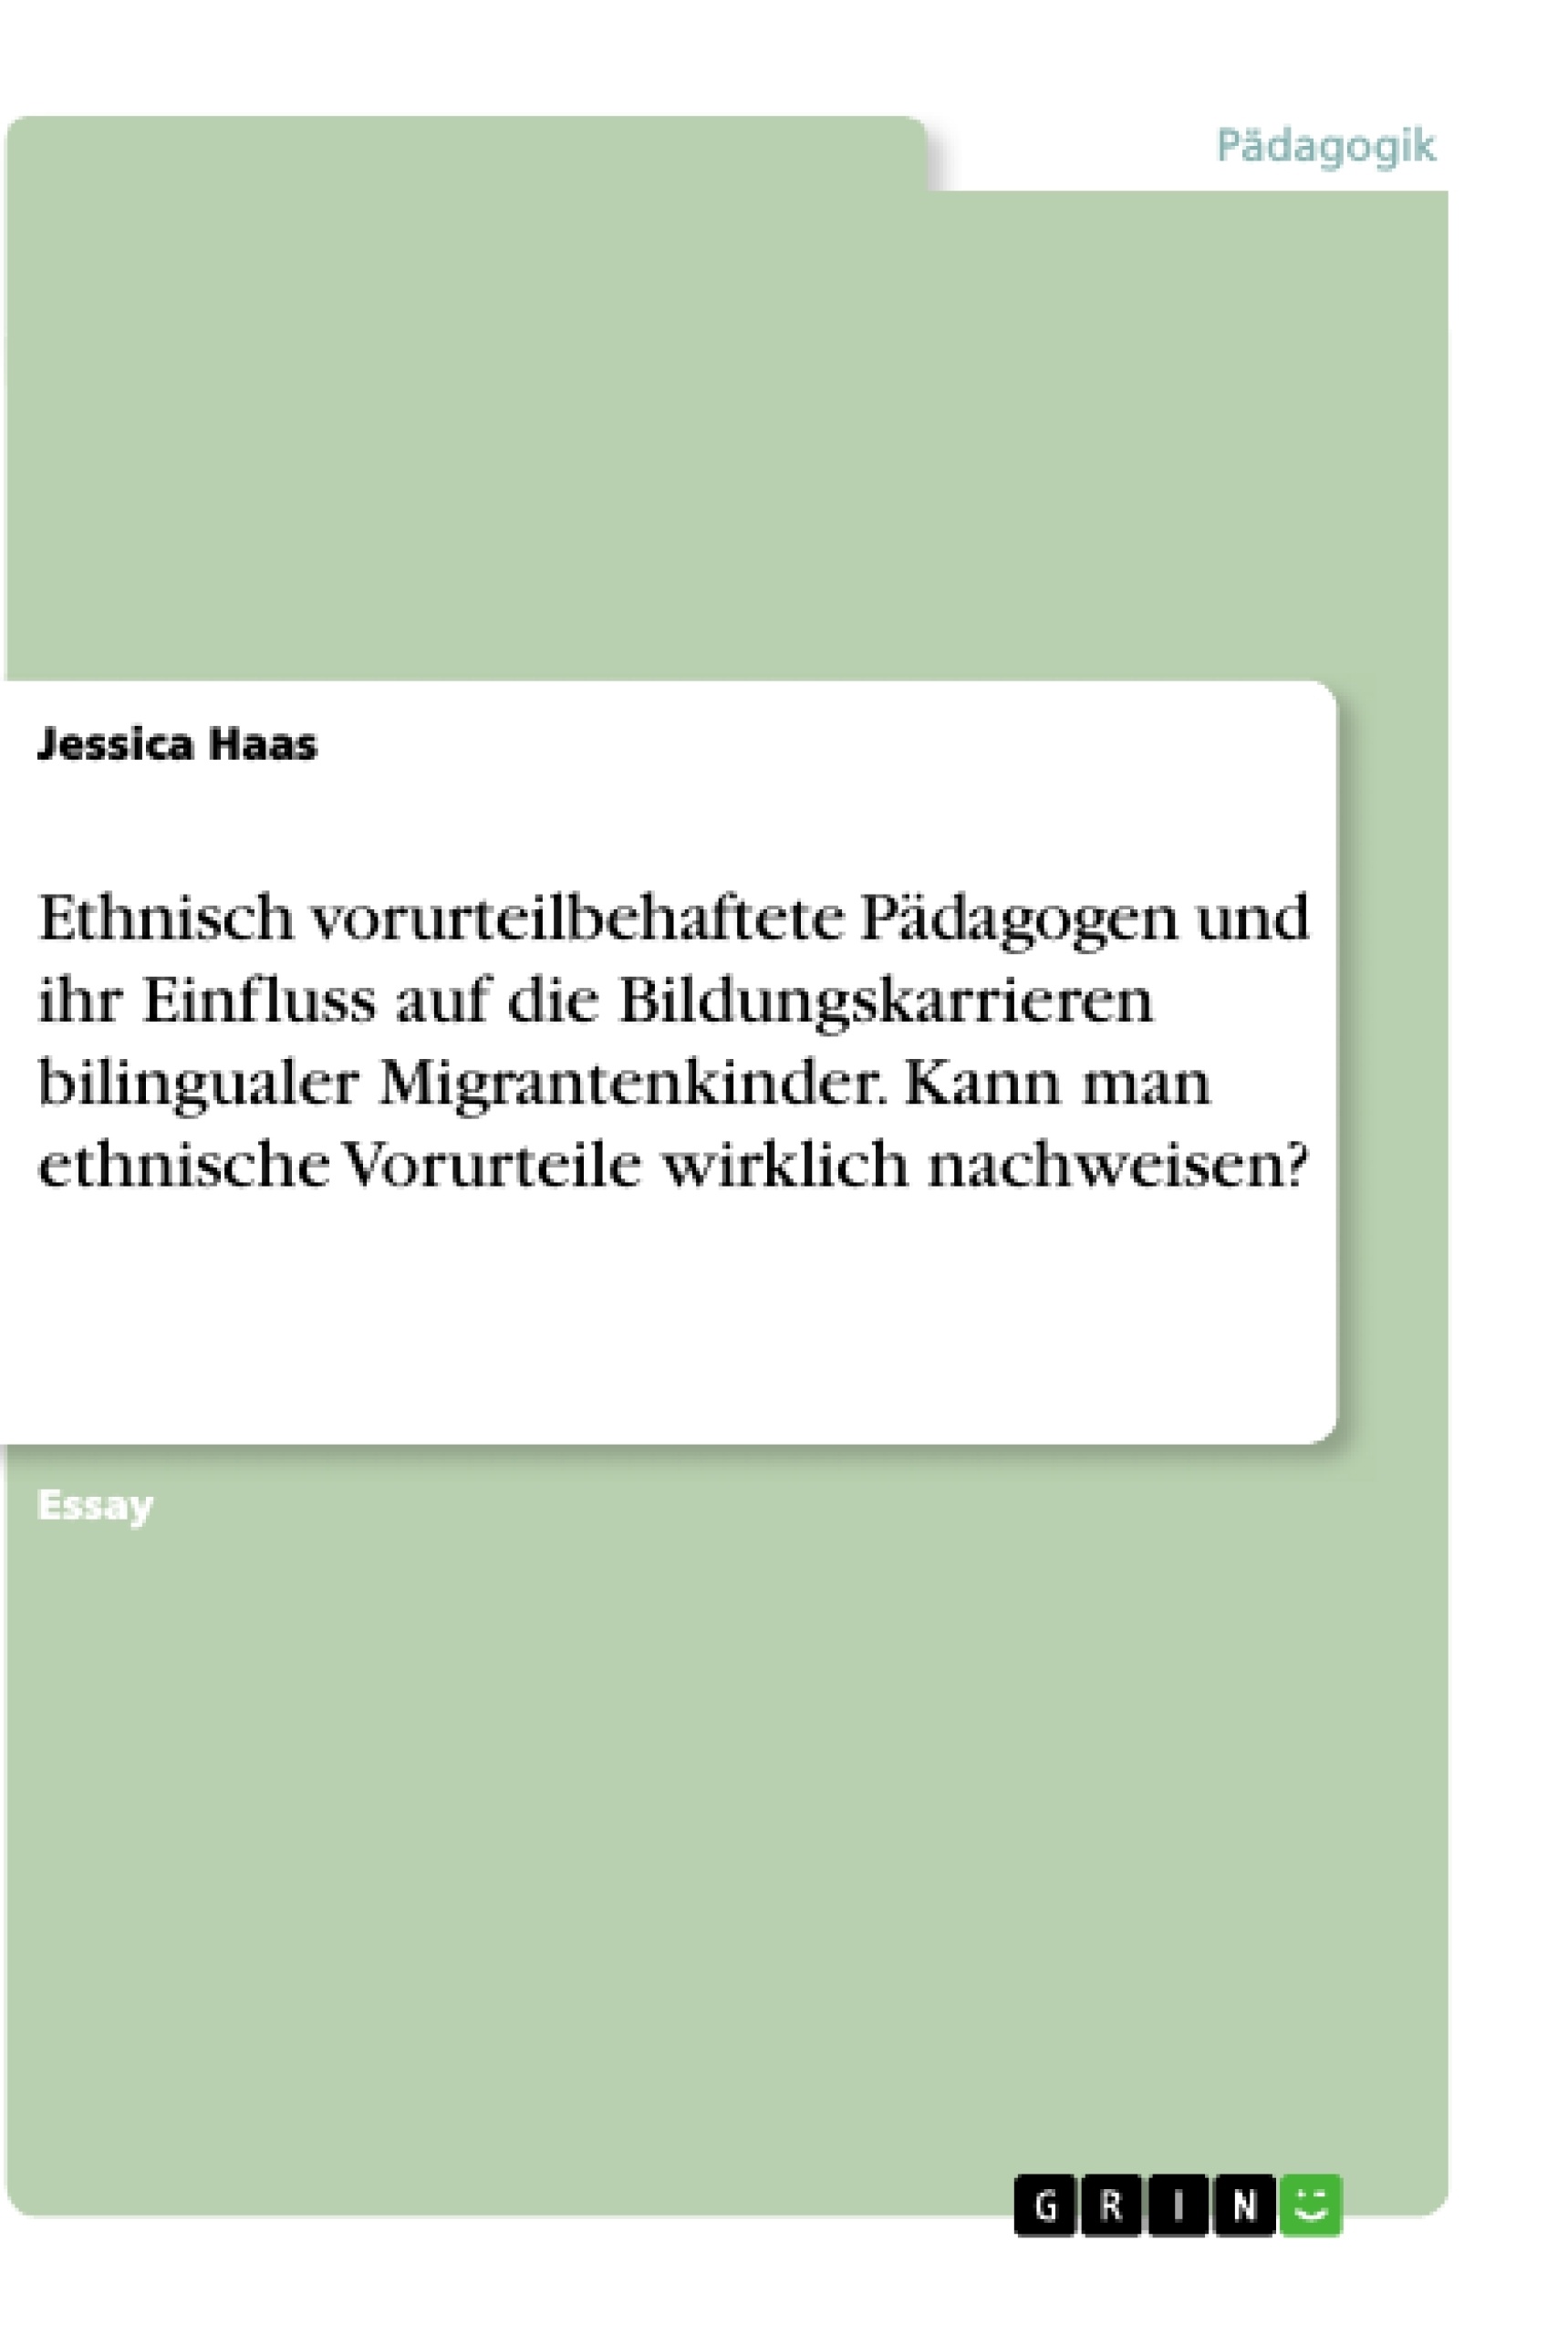 Titel: Ethnisch vorurteilbehaftete Pädagogen und ihr Einfluss auf die Bildungskarrieren bilingualer Migrantenkinder. Kann man ethnische Vorurteile wirklich nachweisen?